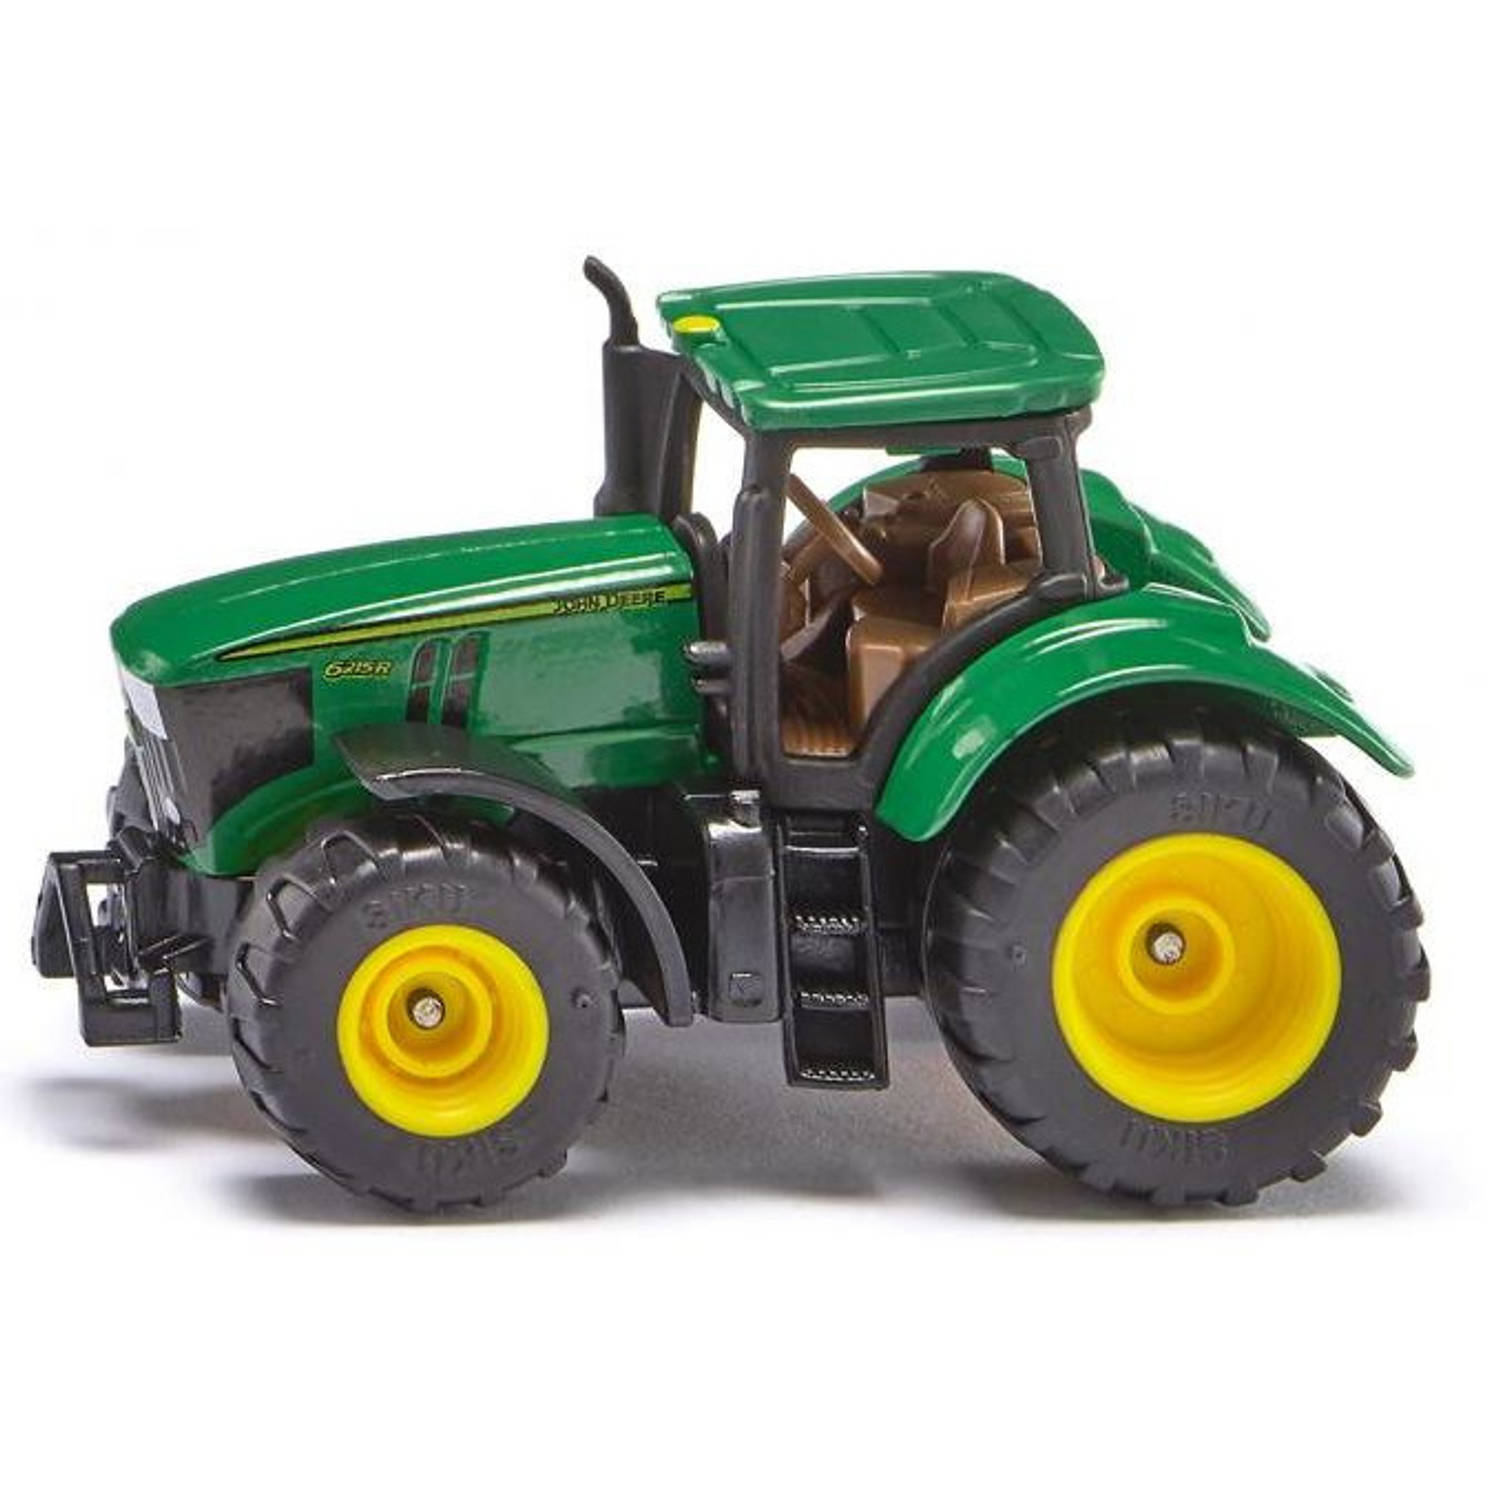 SIKU 1064, John Deere 6250R Tractor, metaal/kunststof, groen, incl. trekhaak, wielen met rubberen banden